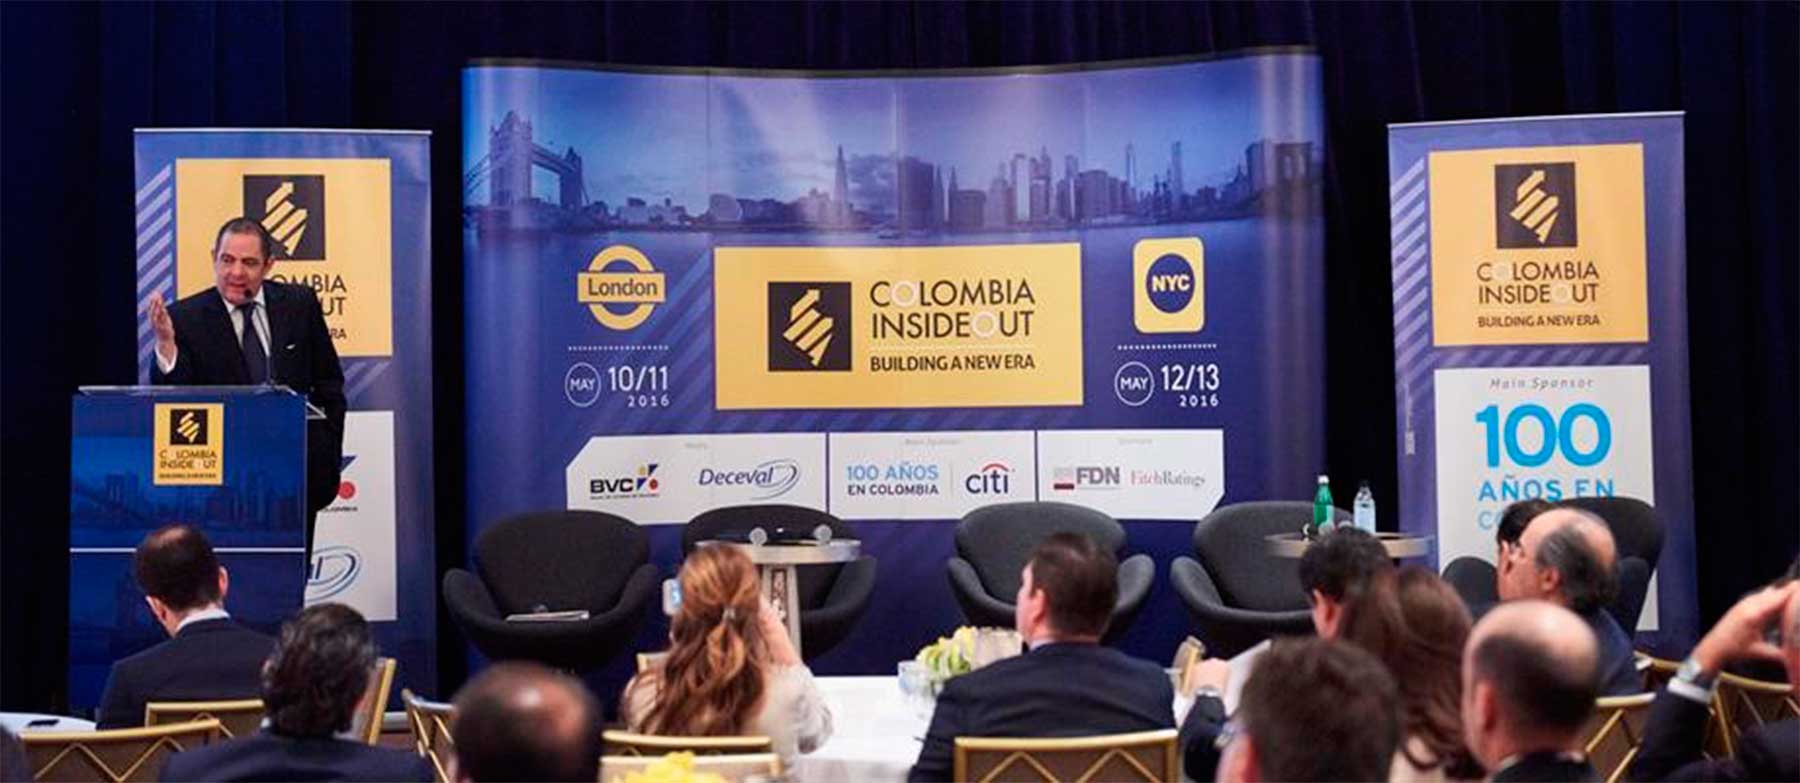 Gobierno convoca a banca extranjera a participar en financiación de nuevas autopistas en Colombia